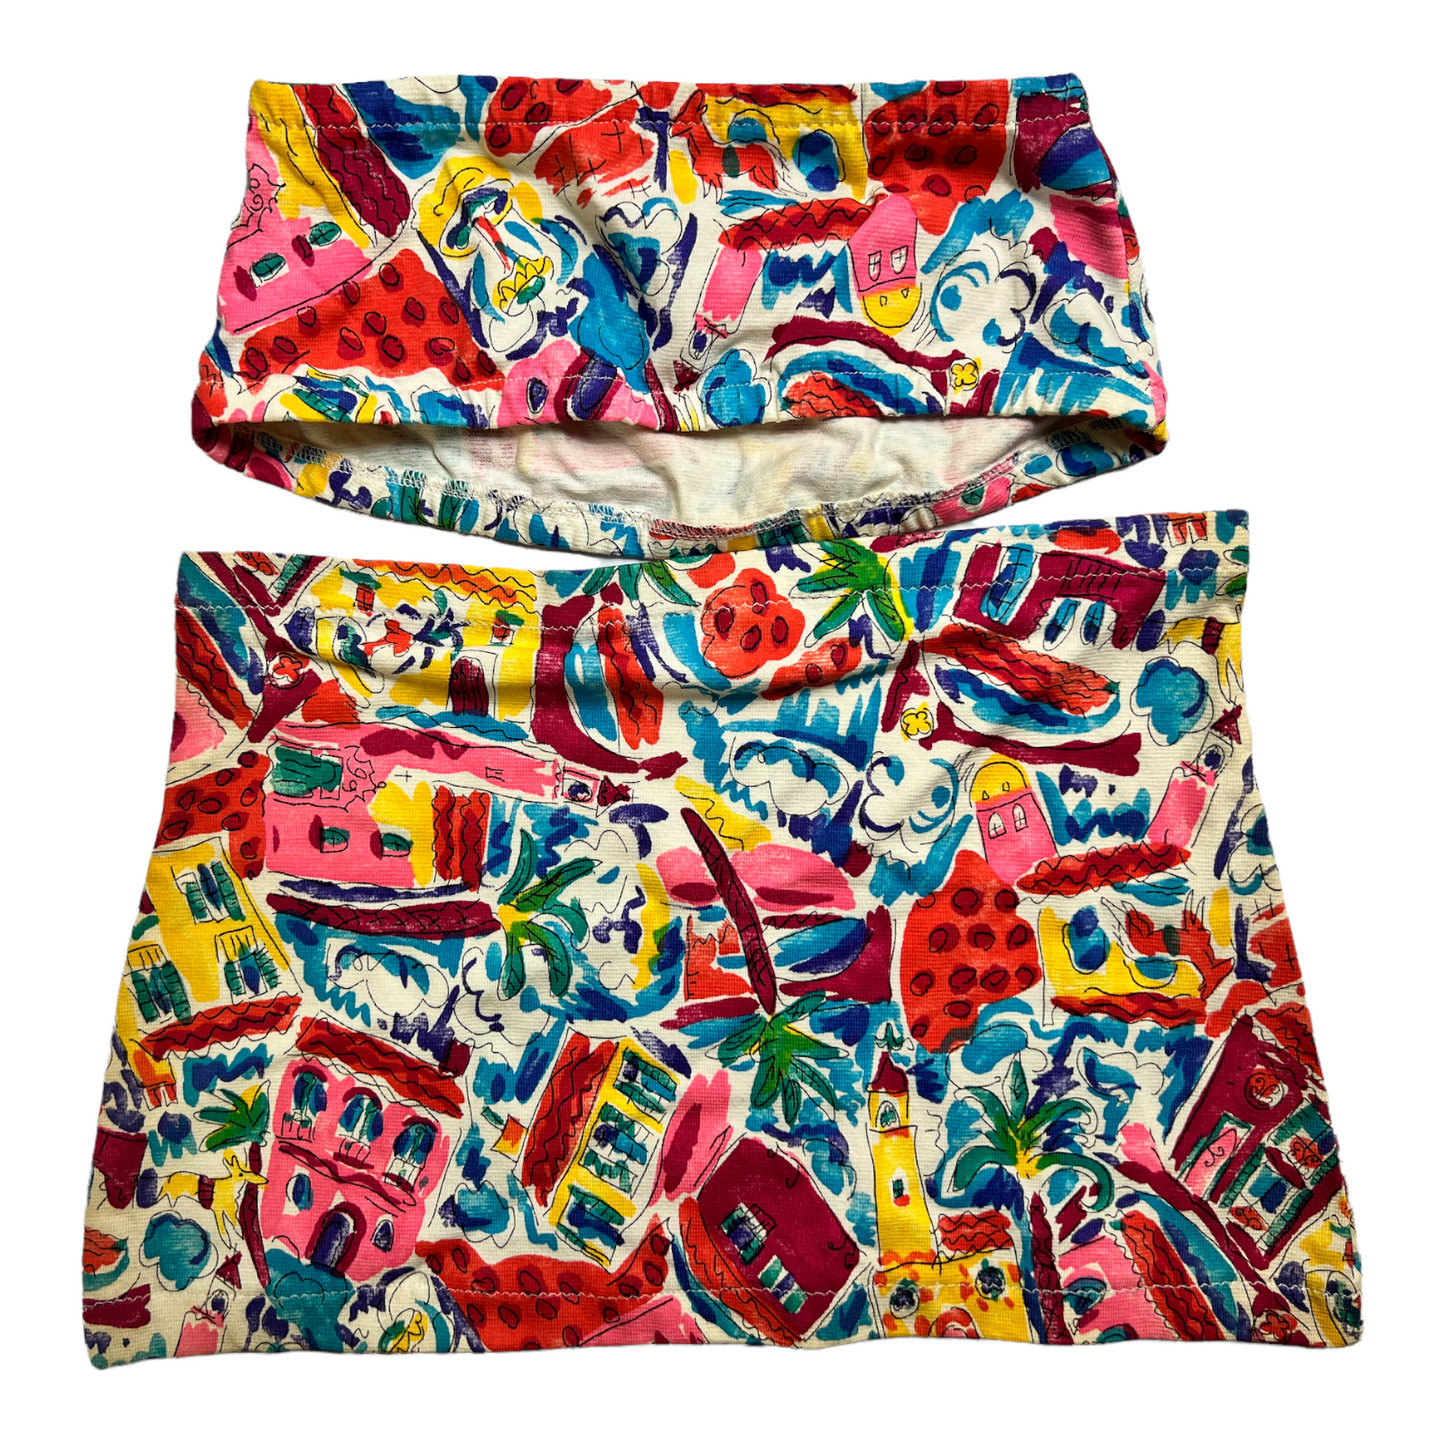 New Multicolor Fancy Breast Cover & Skirt set size S (Swim Wear)